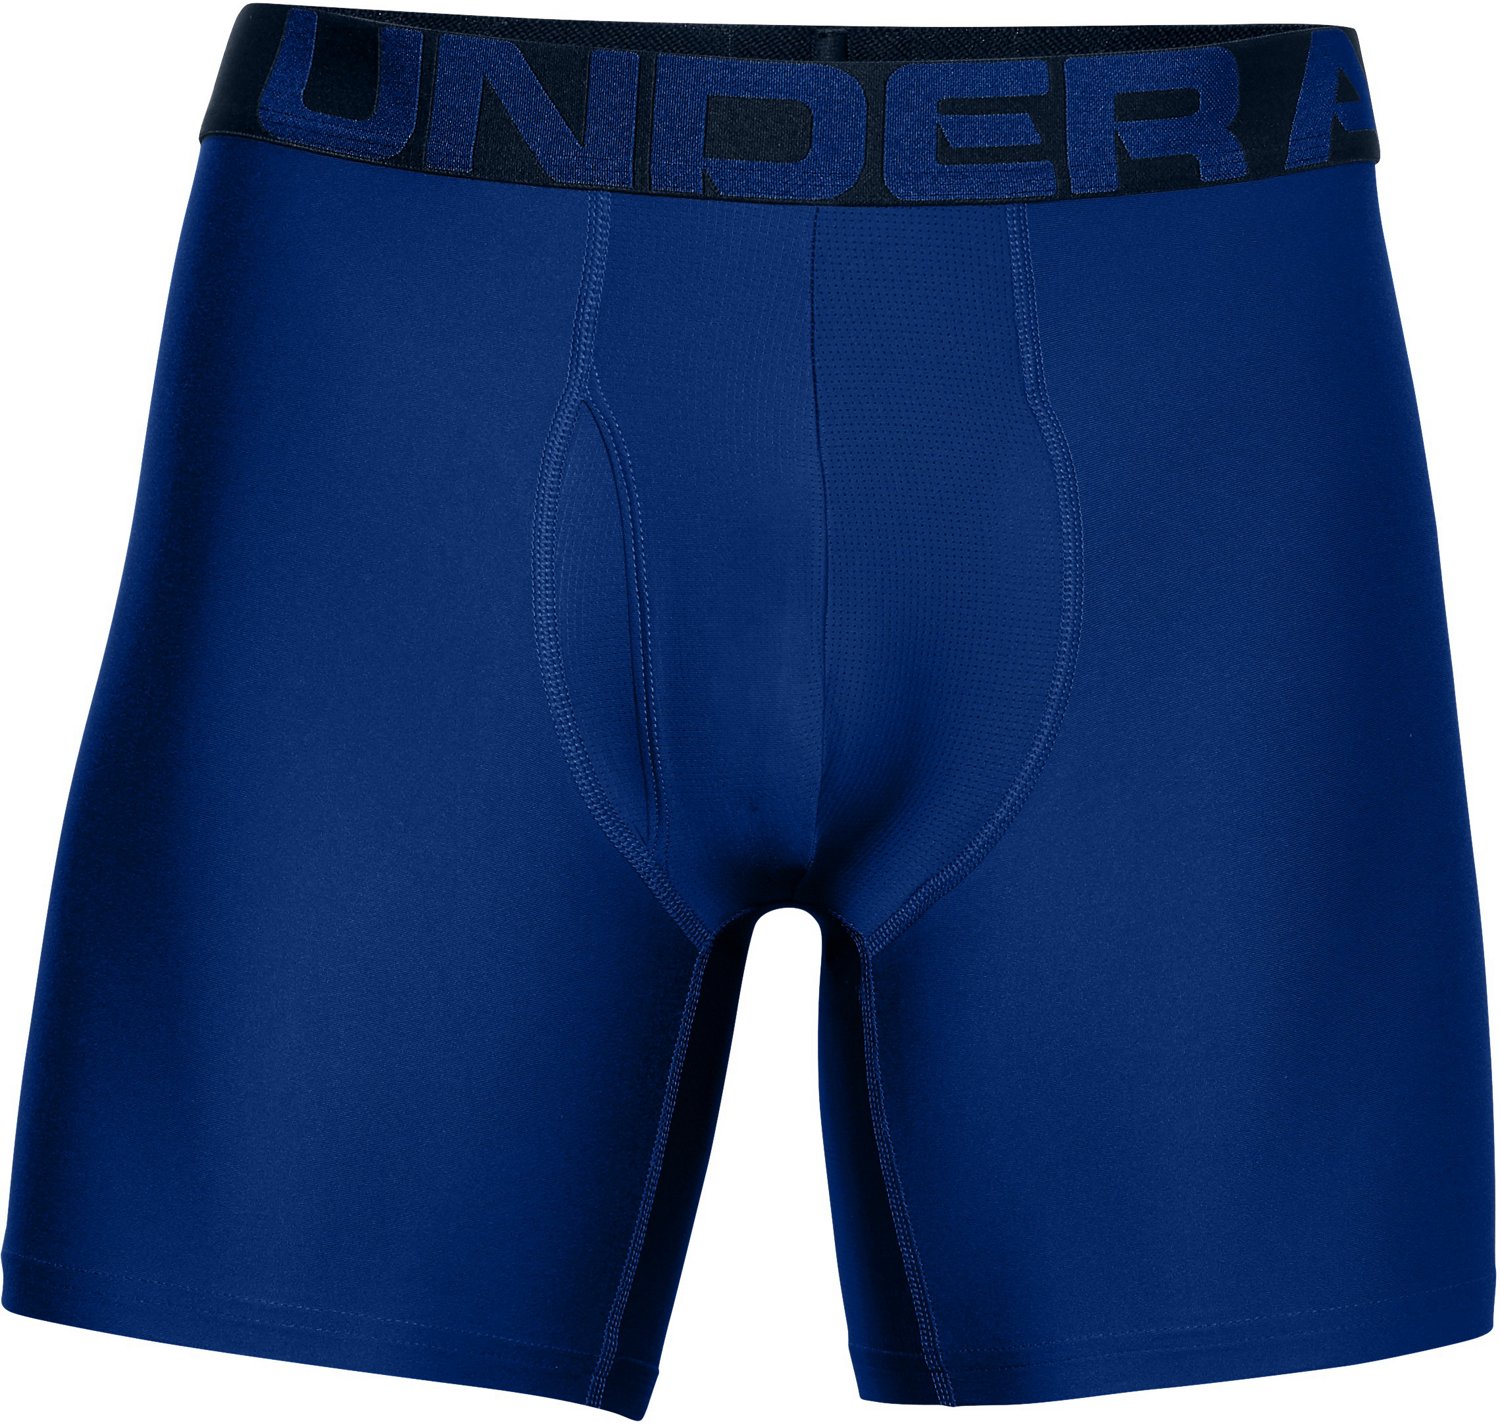 NIB Under Armour 2-Pack Mens Underwear 6 Boxer Briefs Blue Gray XXL